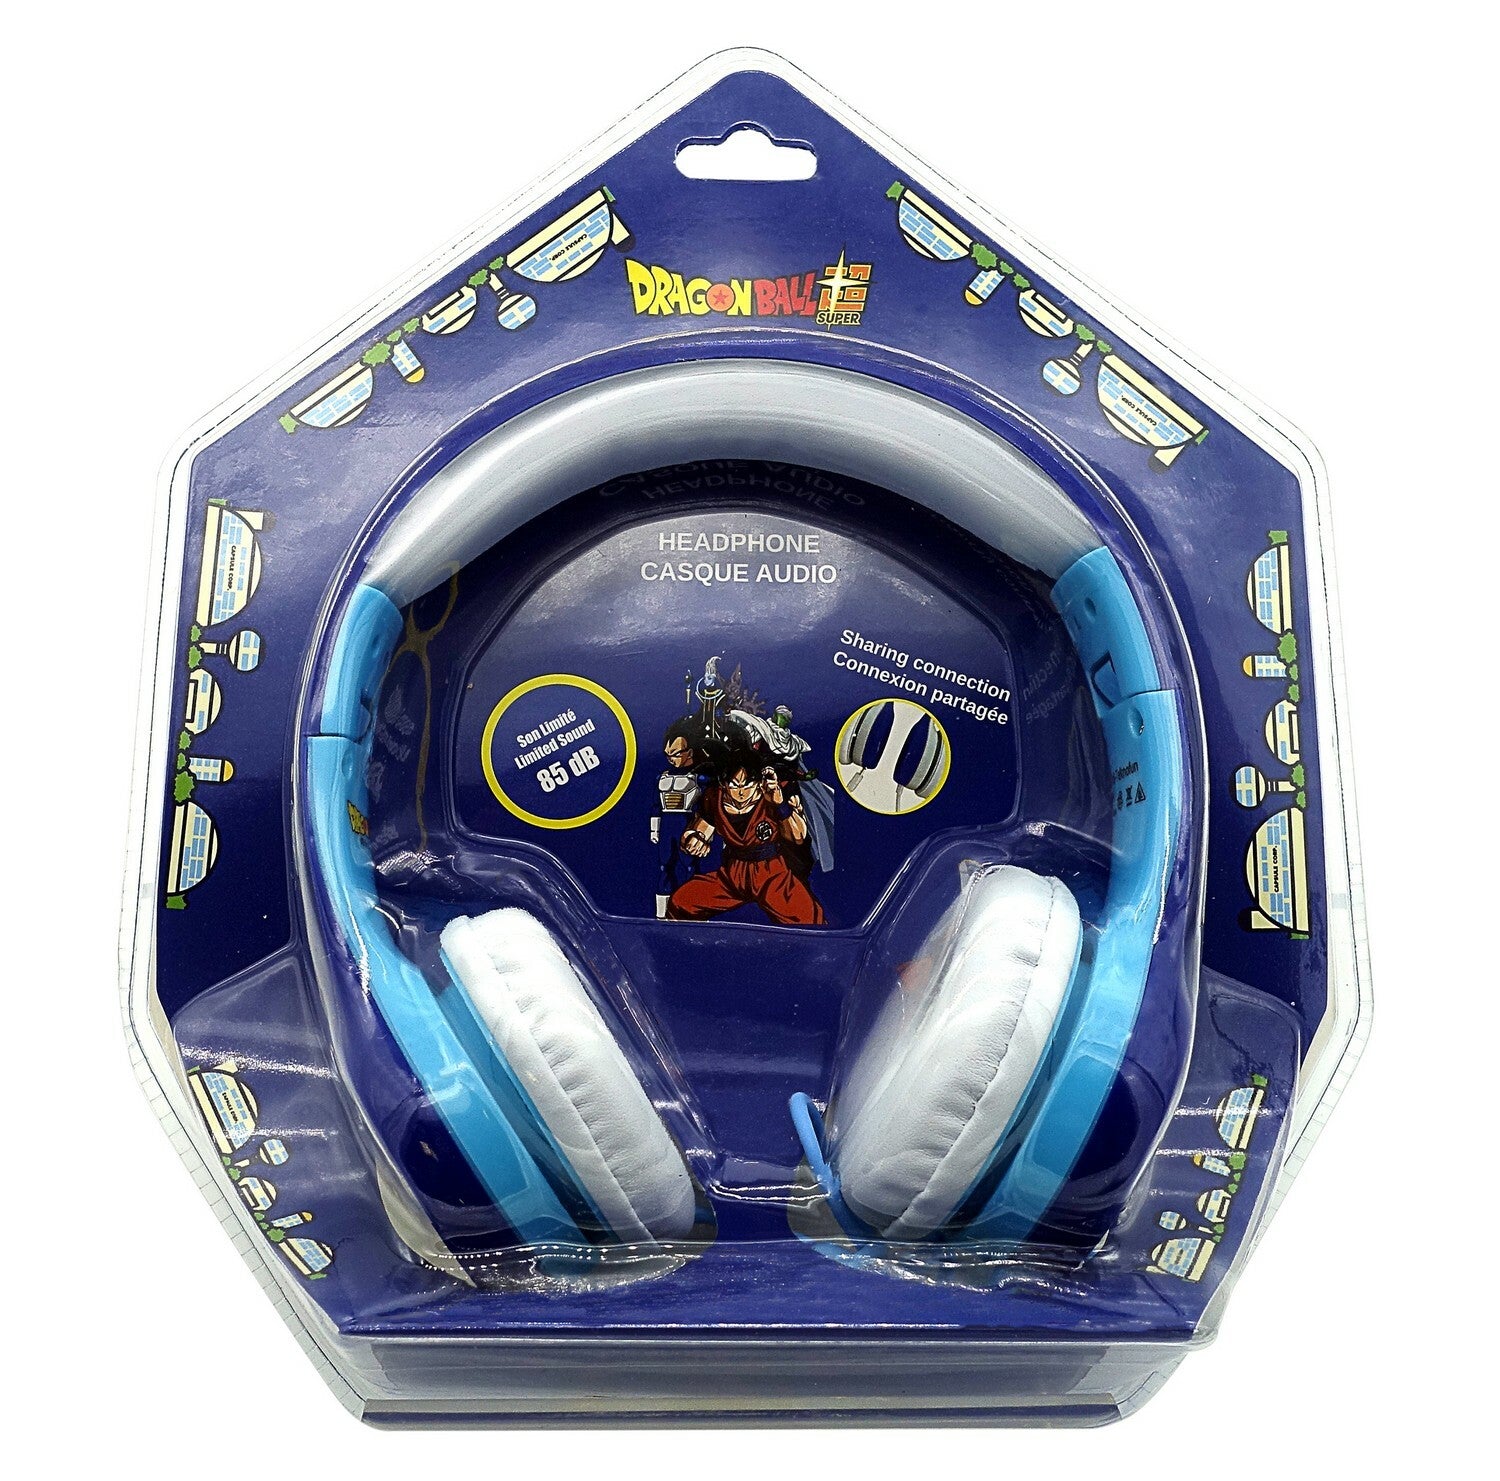  Dragon Ball Super: Trunks and Goten Headphones  3760158113263